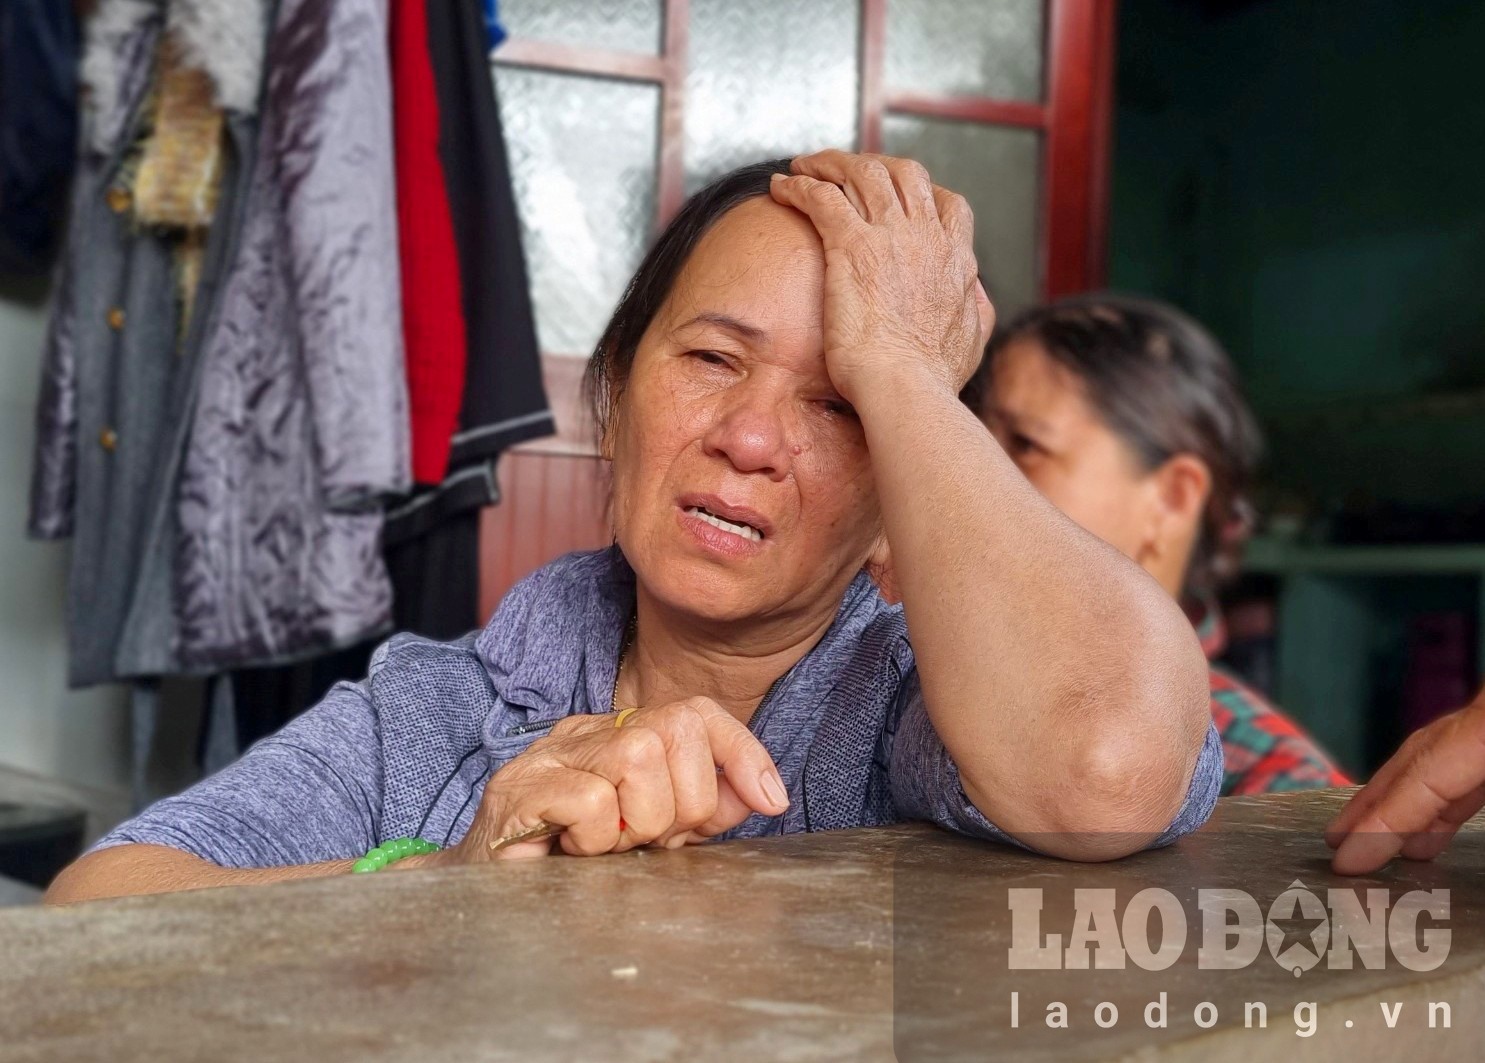 Bà Phạm Thị Khanh ở thôn Thanh An, xã Nghĩa Phú, TP Quảng Ngãi đau đớn tột cùng khi chồng là ông Đặng Luận (64 tuổi) tử vong trong vụ tai nạn thảm khốc trên. Ảnh: Ngọc Viên